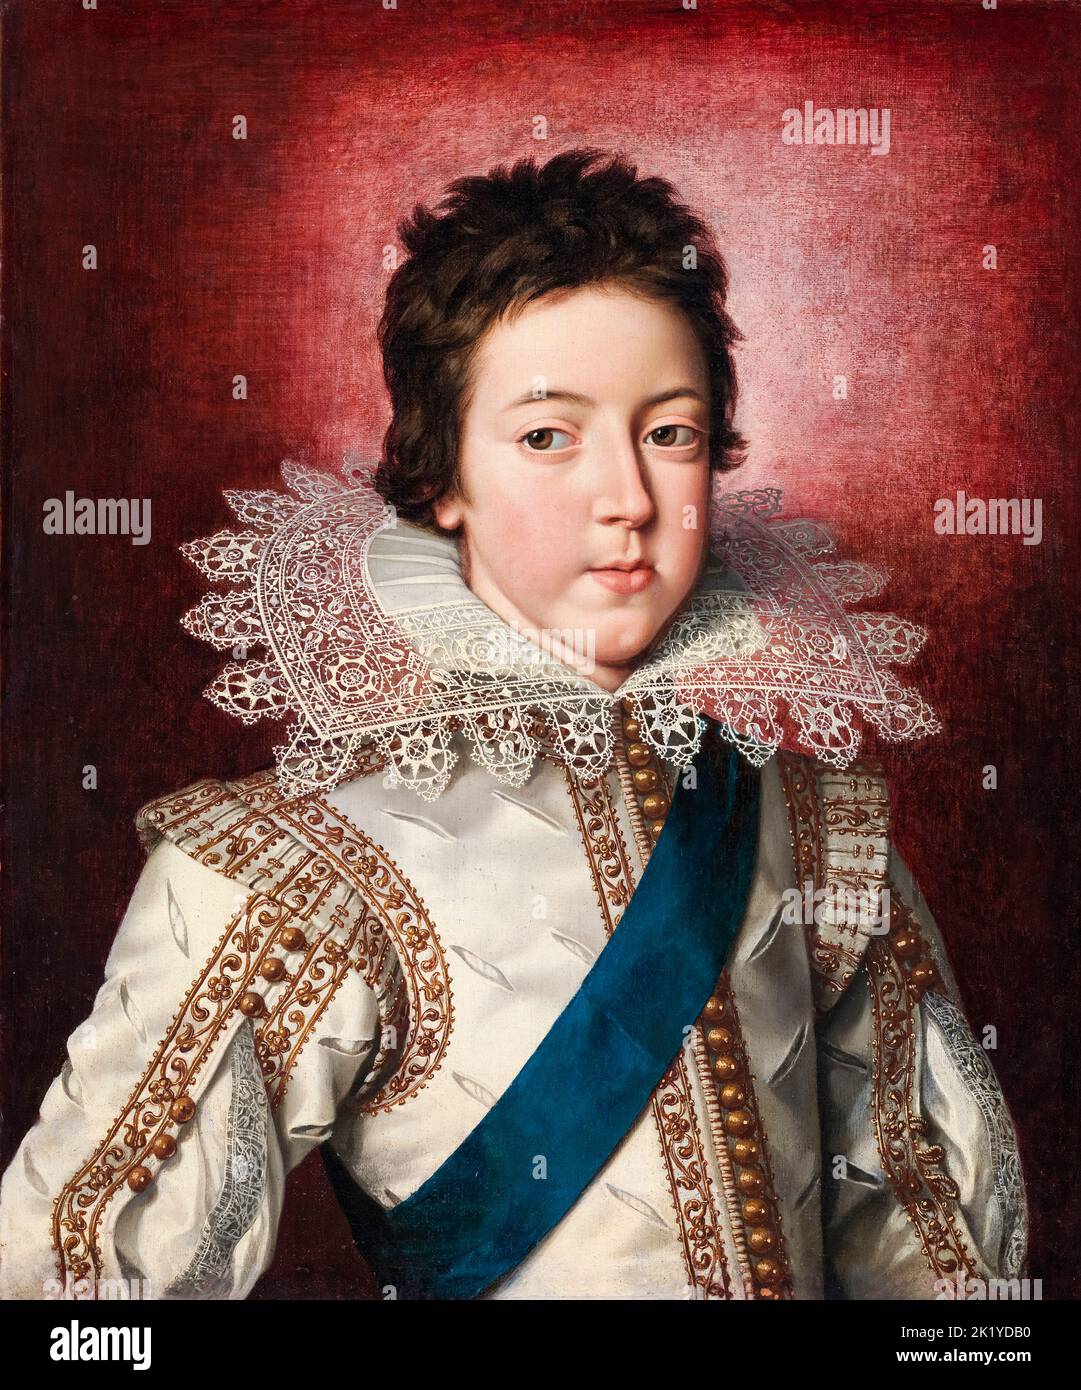 Ludwig XIII. (1601-1643), König von Frankreich (1610-1643) als Junge, Porträtmalerei in Öl auf Leinwand von Frans Pourbus dem Jüngeren, um 1616 Stockfoto